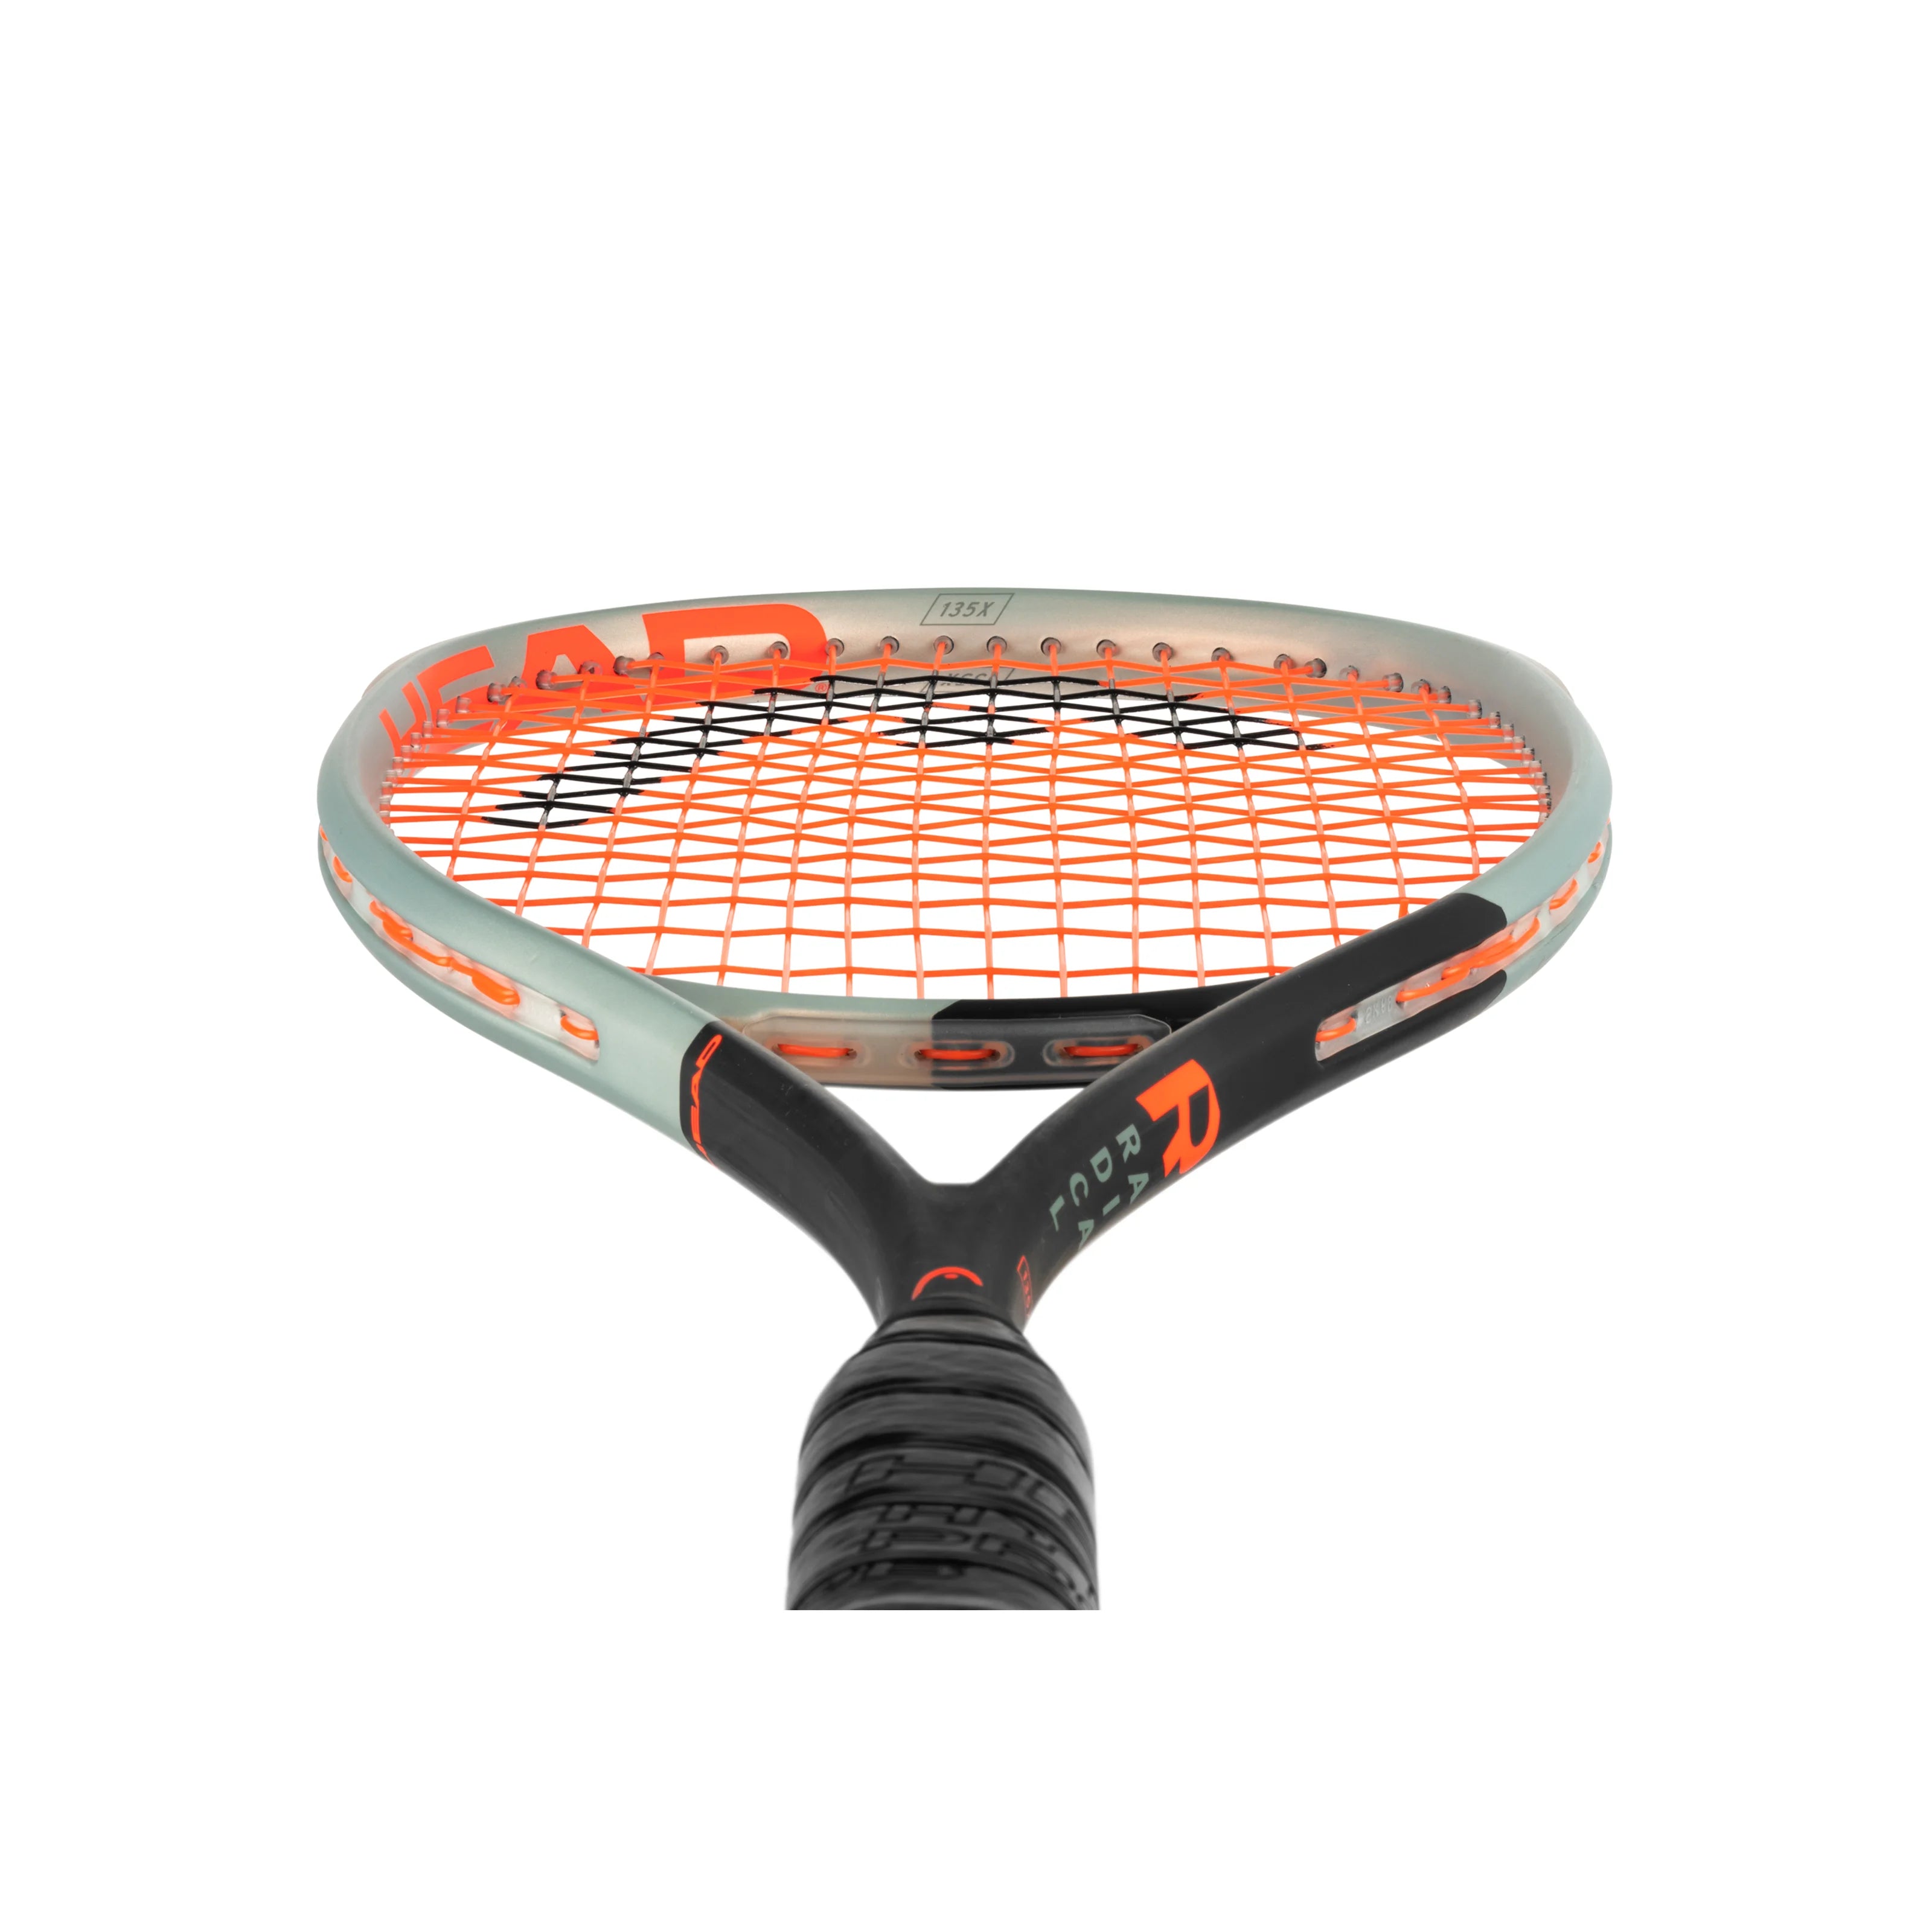 Head Radical 135 X 2022 Squash Racquet